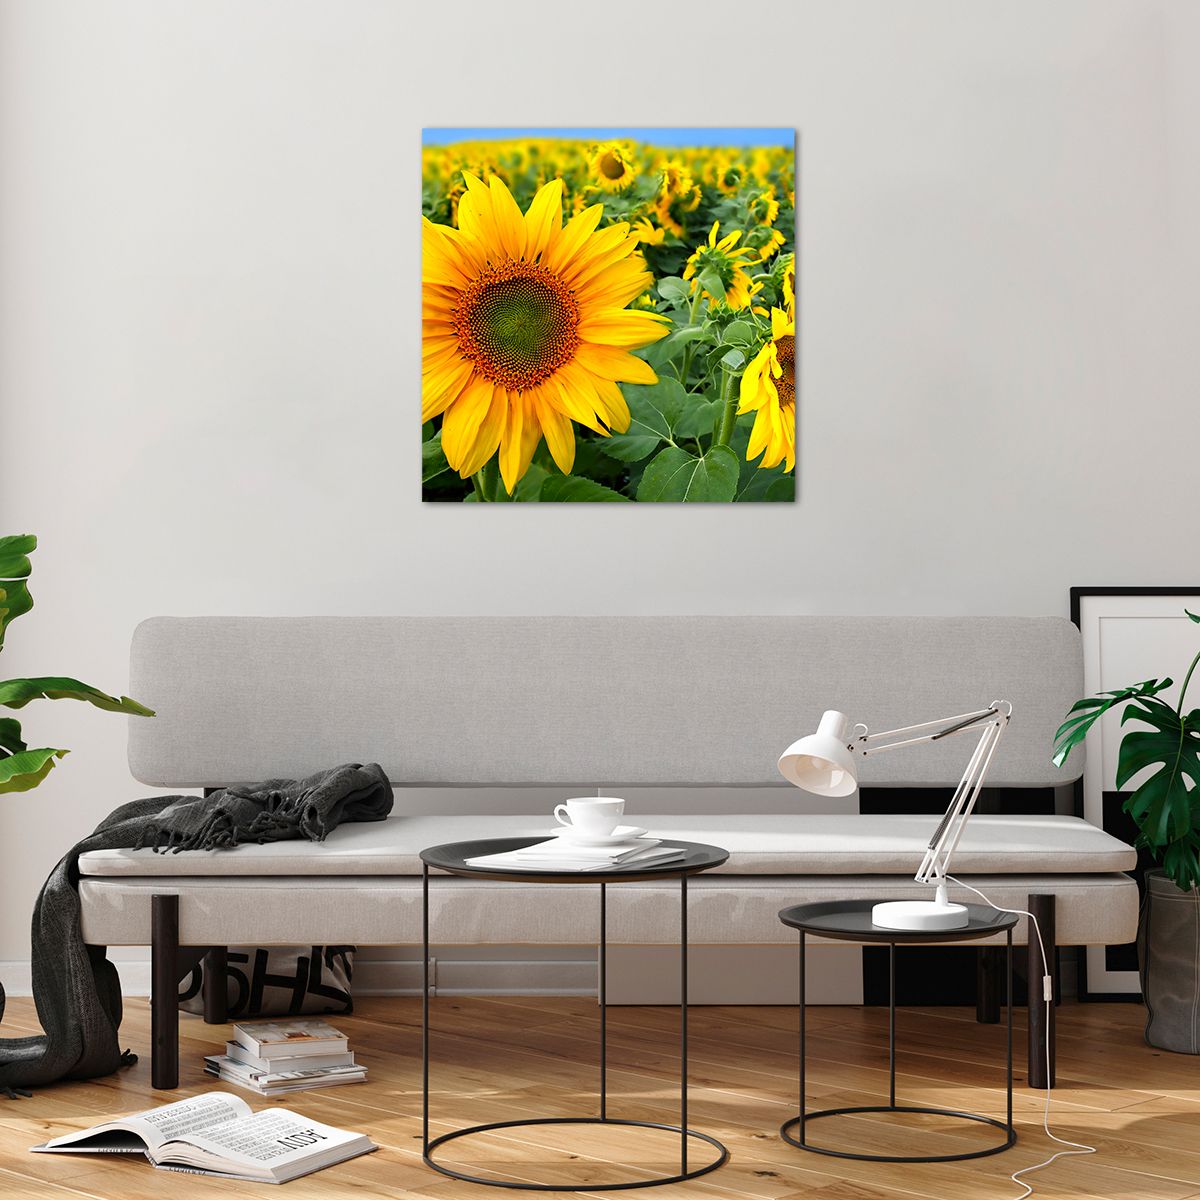 Bilder auf glas Blumen, Bilder auf glas Sonnenblumen, Bilder auf glas Natur, Bilder auf glas Garten, Bilder auf glas Gelbe Blumen